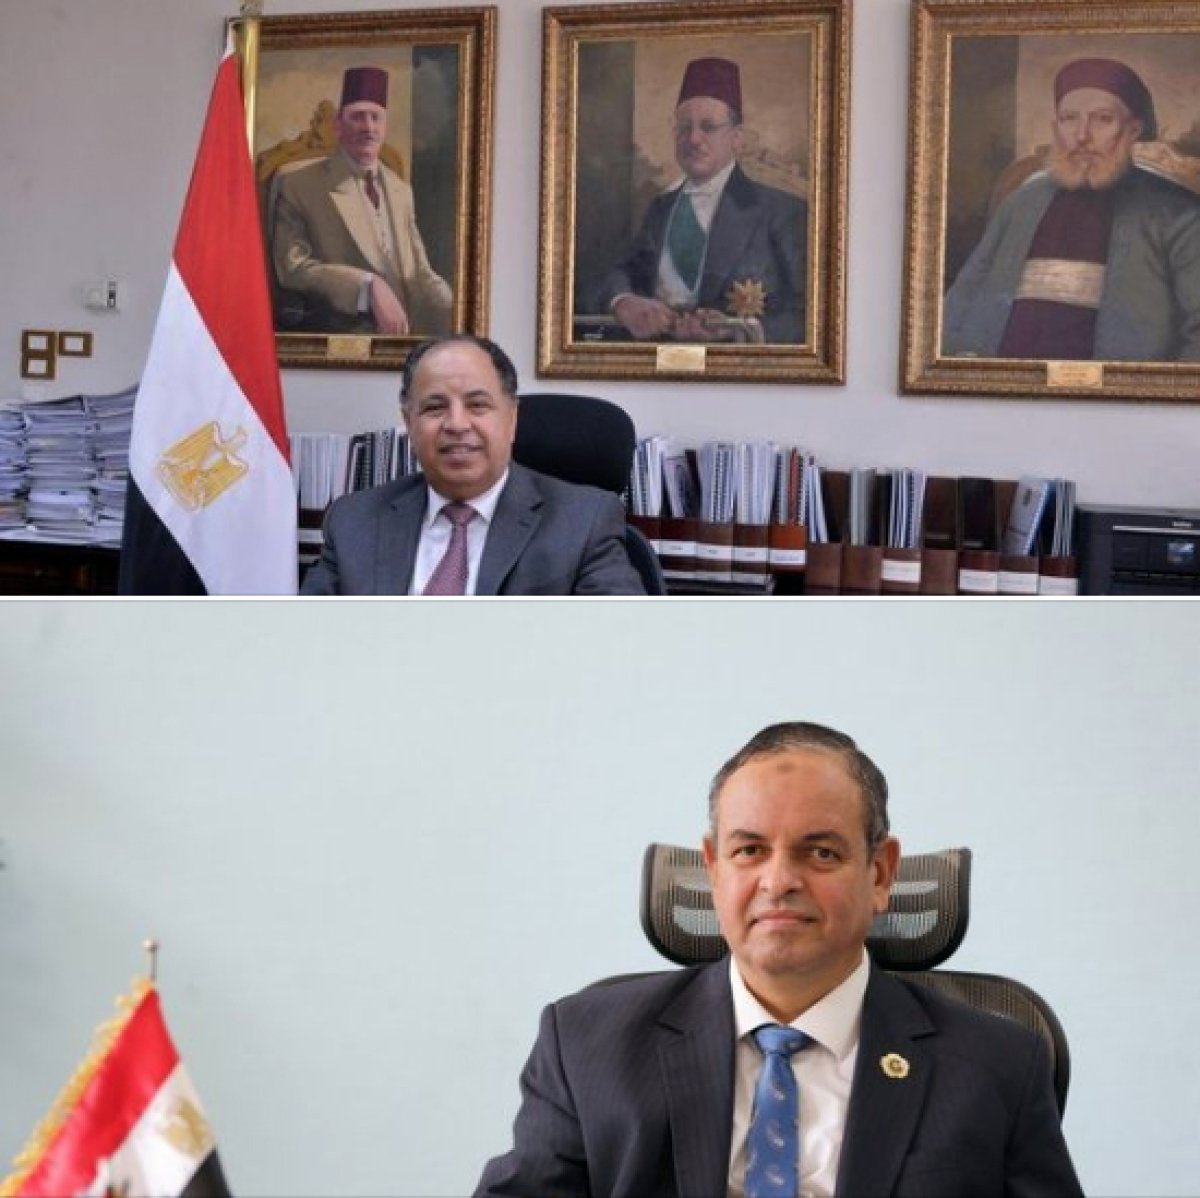 وزير المالية: تيسير إجراءات الإفراج الجمركي ورد الضريبة لضيوف مصر فى قمة المناخ 